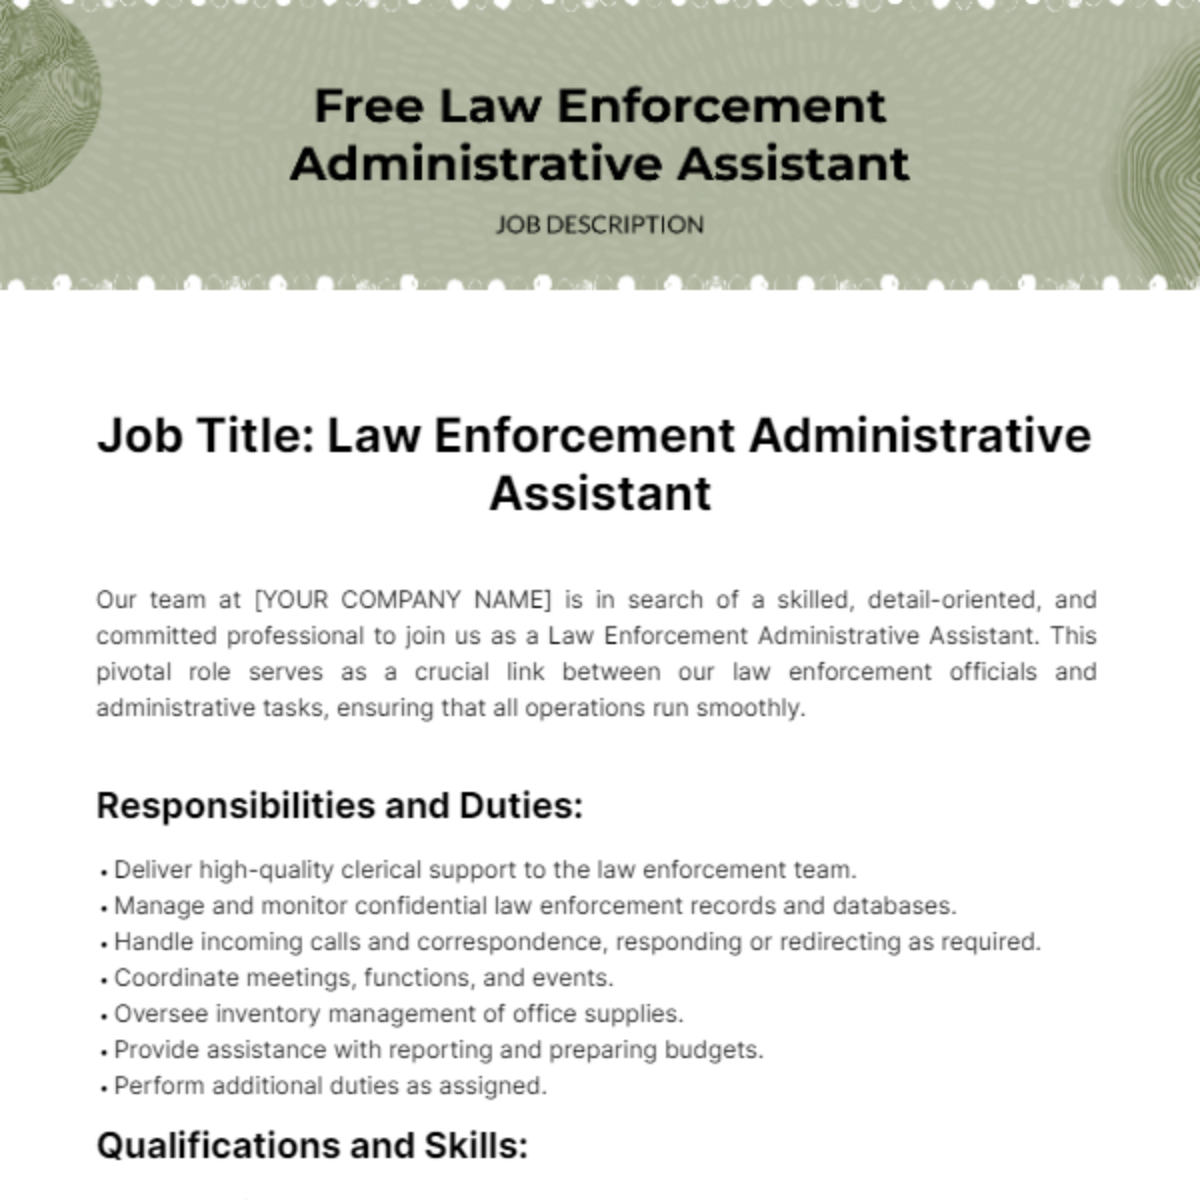 Law Enforcement Administrative Assistant Job Description Template